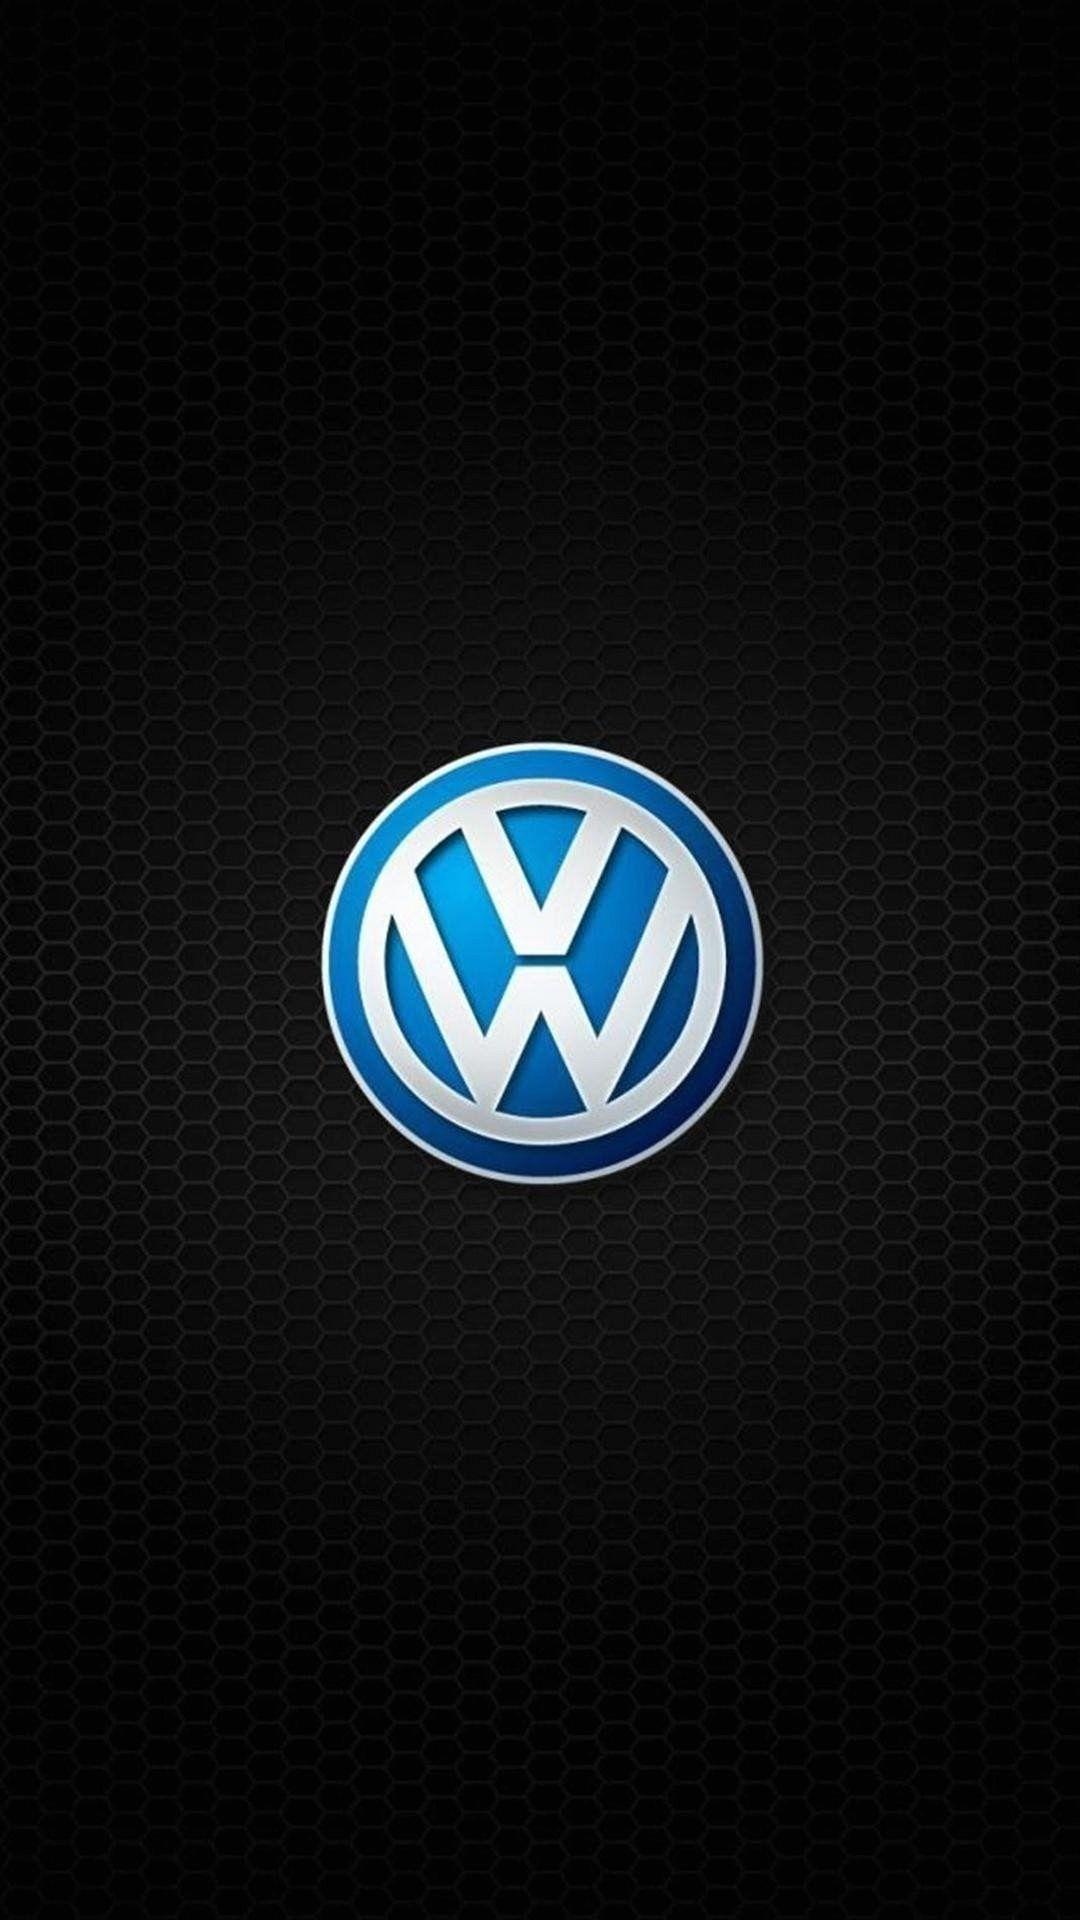 Wallpapers Full Hd 1080 X 1920 Smartphone Volkswagen Logo Symbol